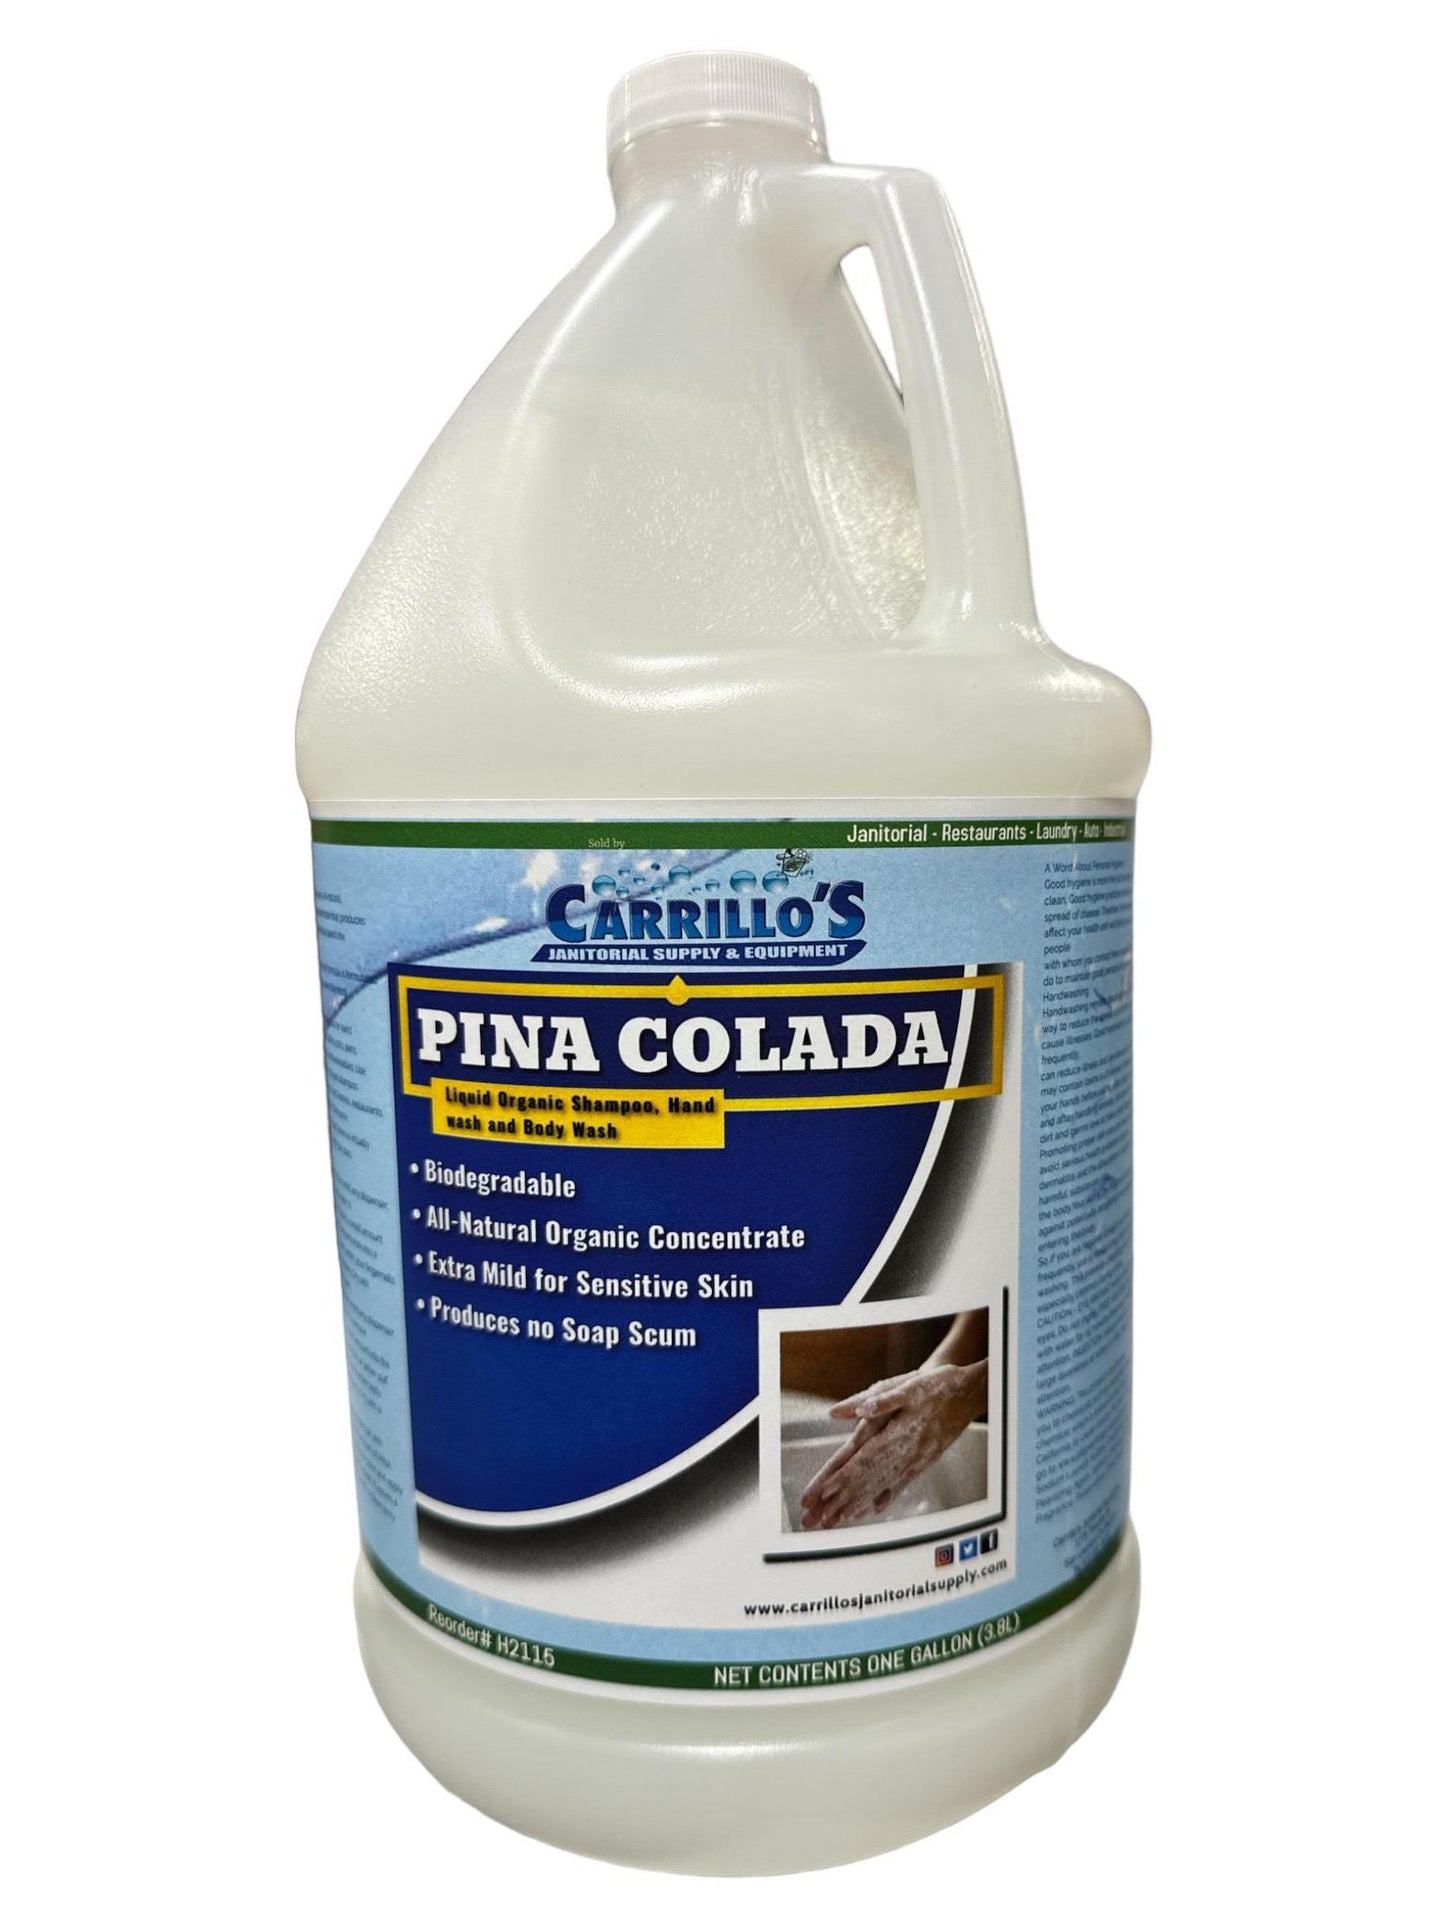 PINA COLADA Liquid Organic Shampoo, Hand wash and Body Wash